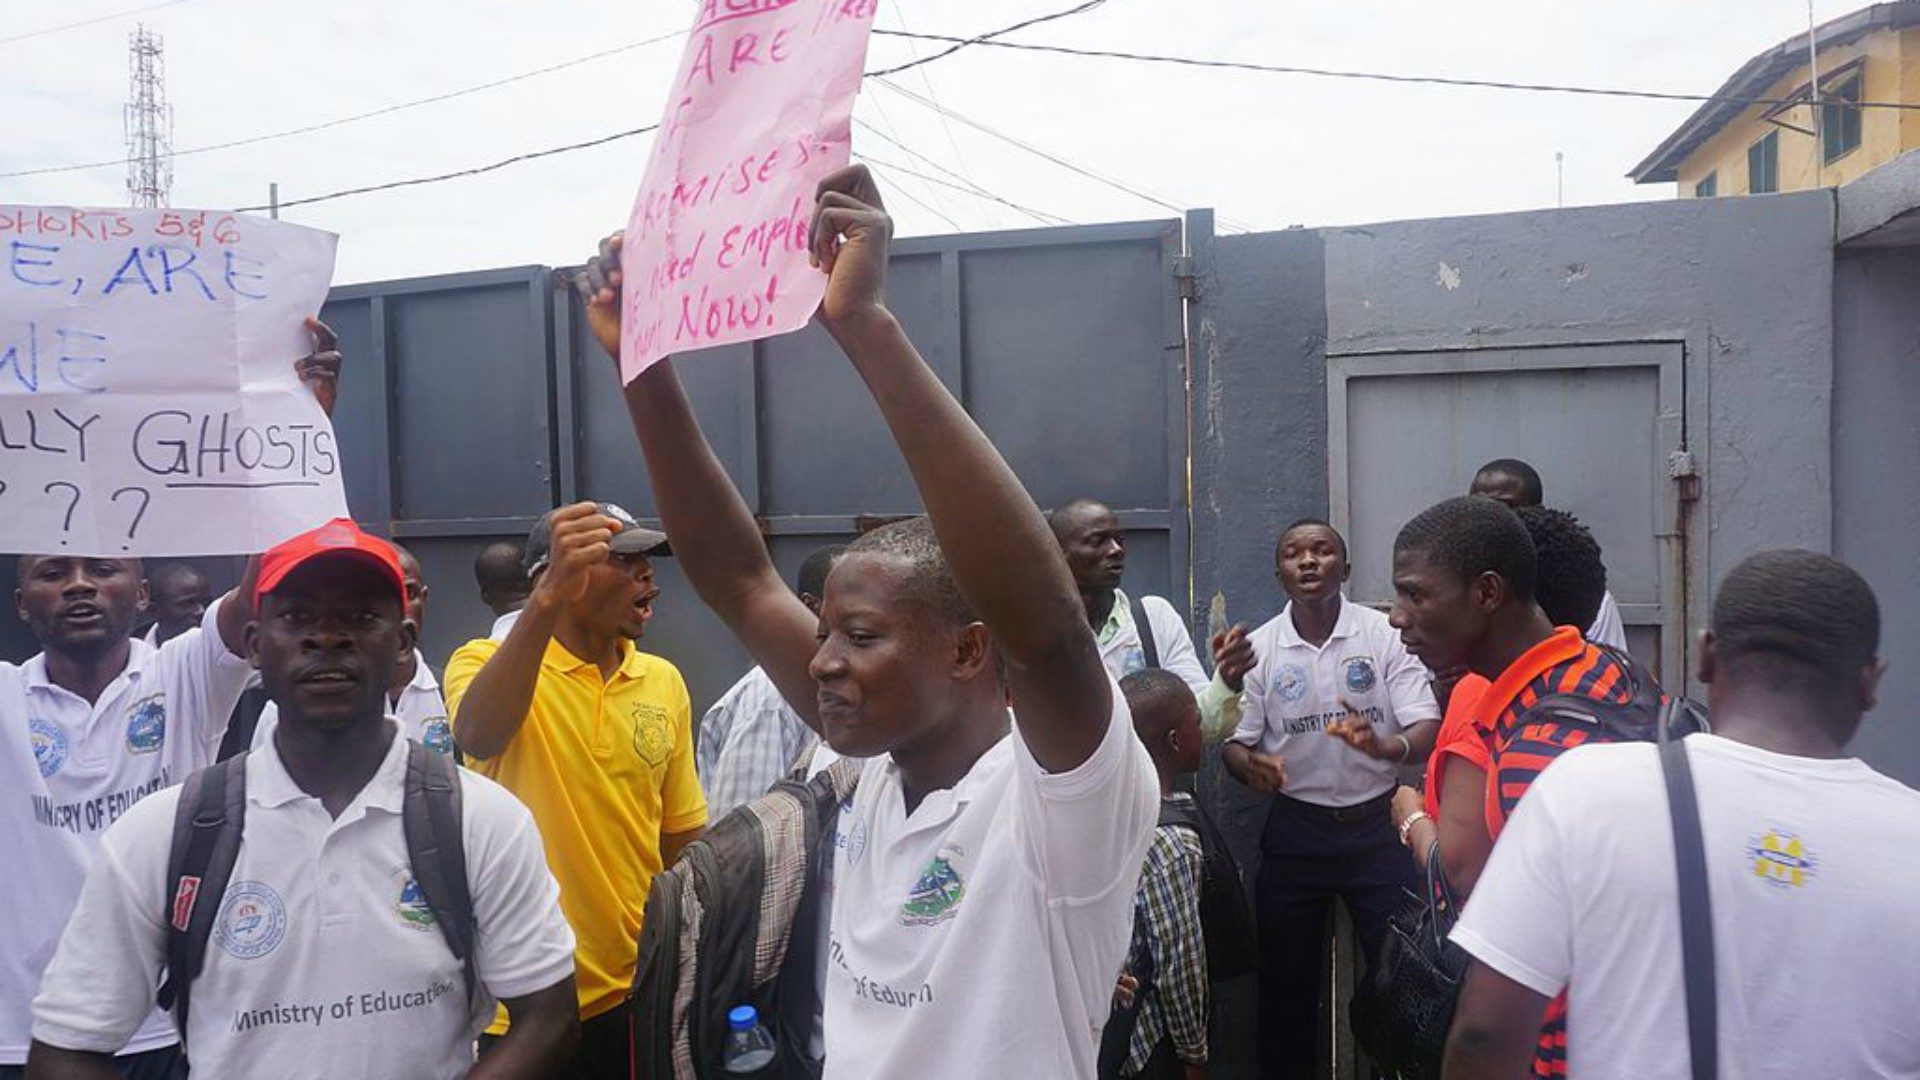 Manifestation de rue au Liberia|  Jefferson Krua CC BY-SA 4